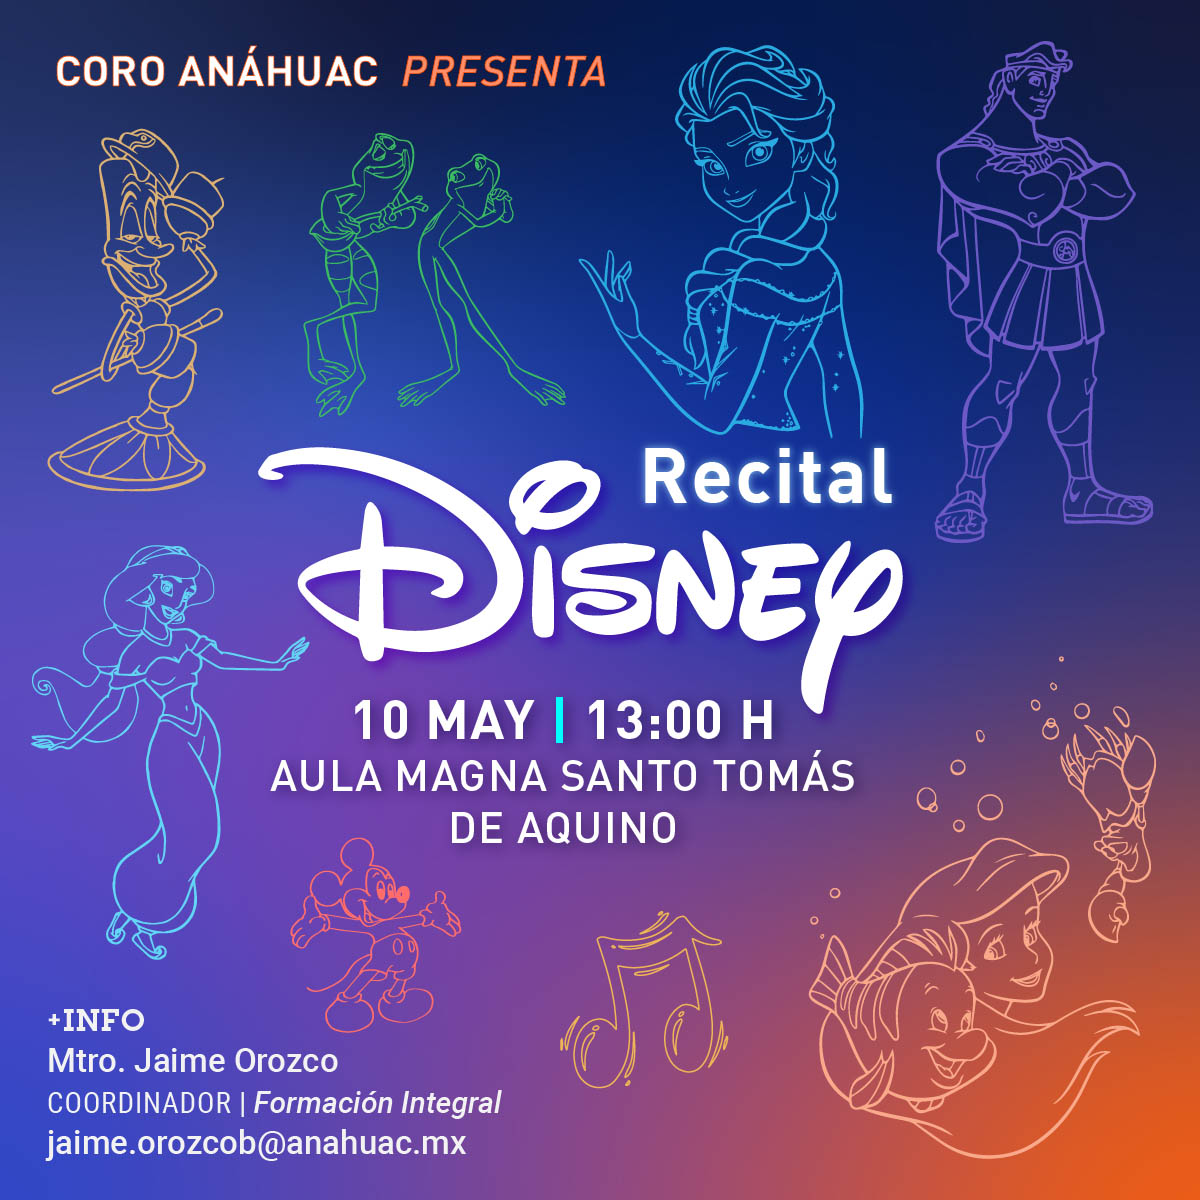 Recital Disney